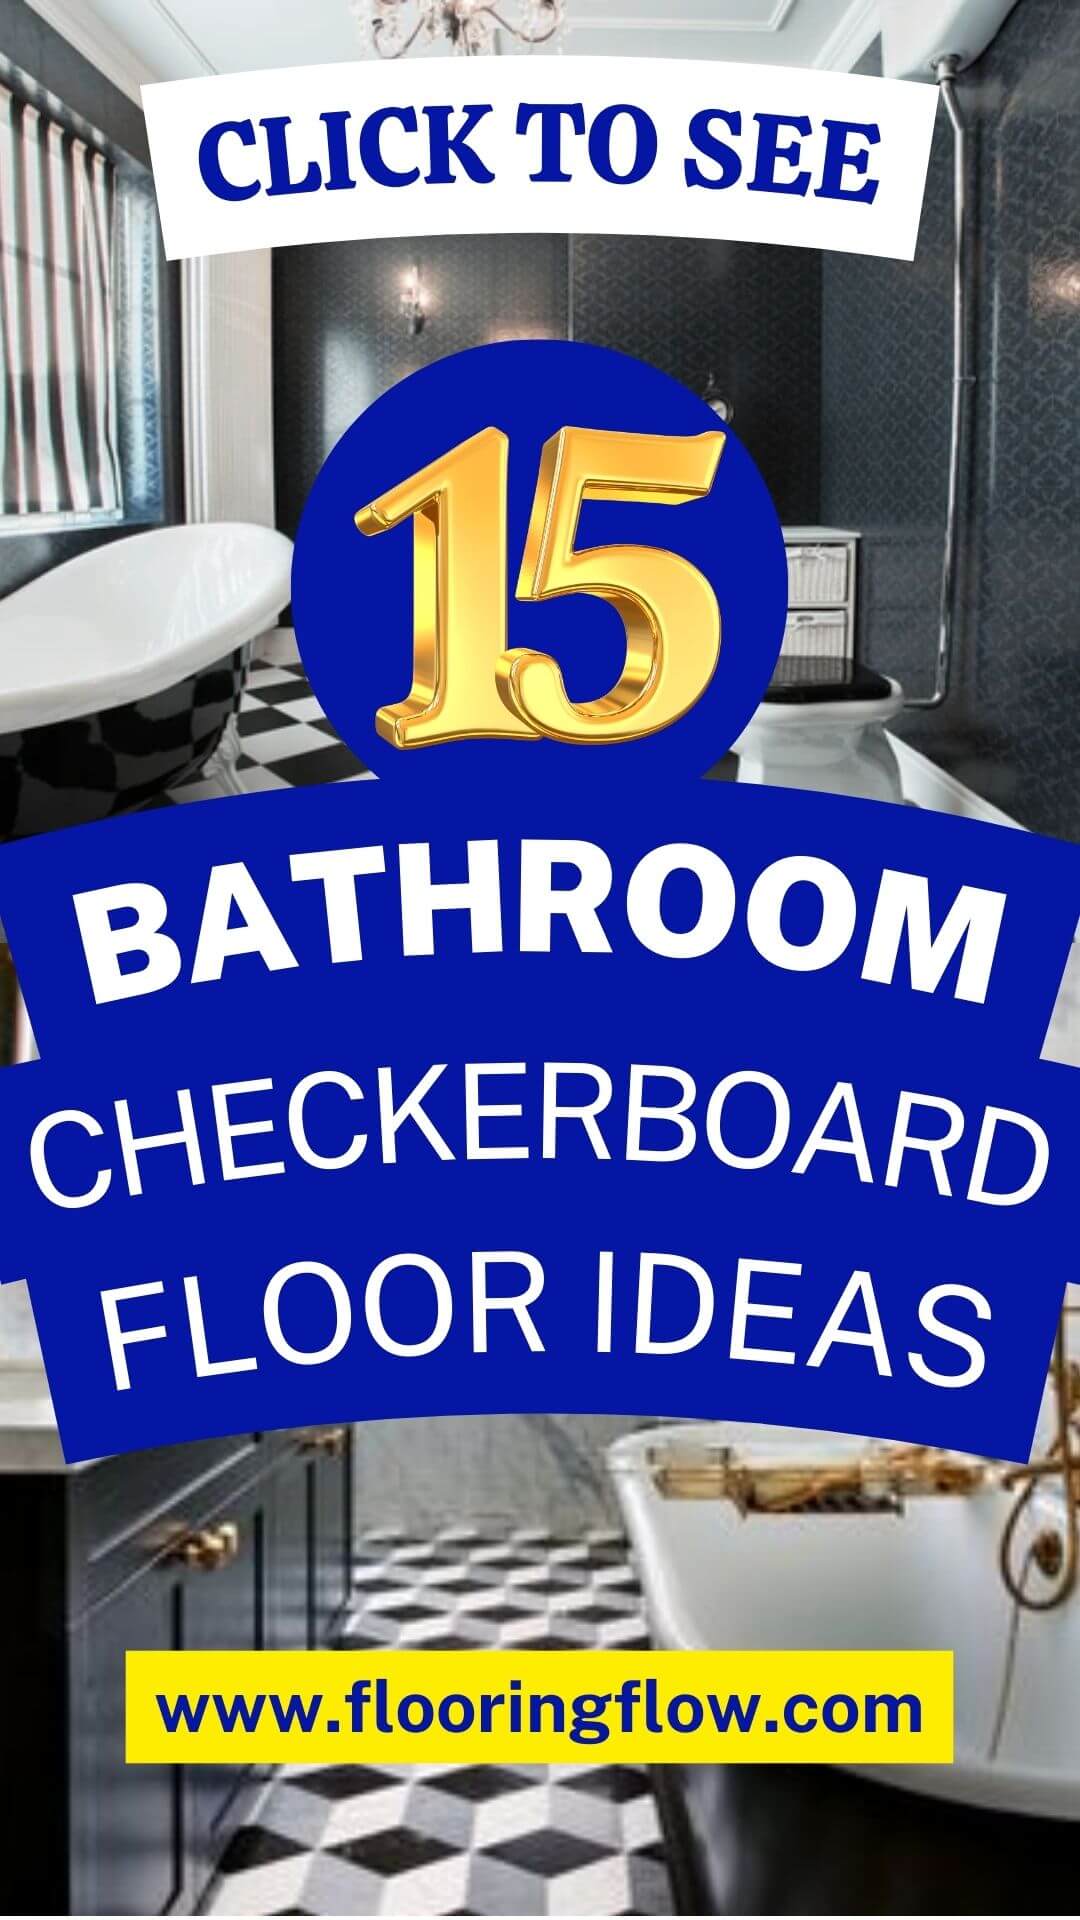 Checkerboard Floor Bathroom Ideas